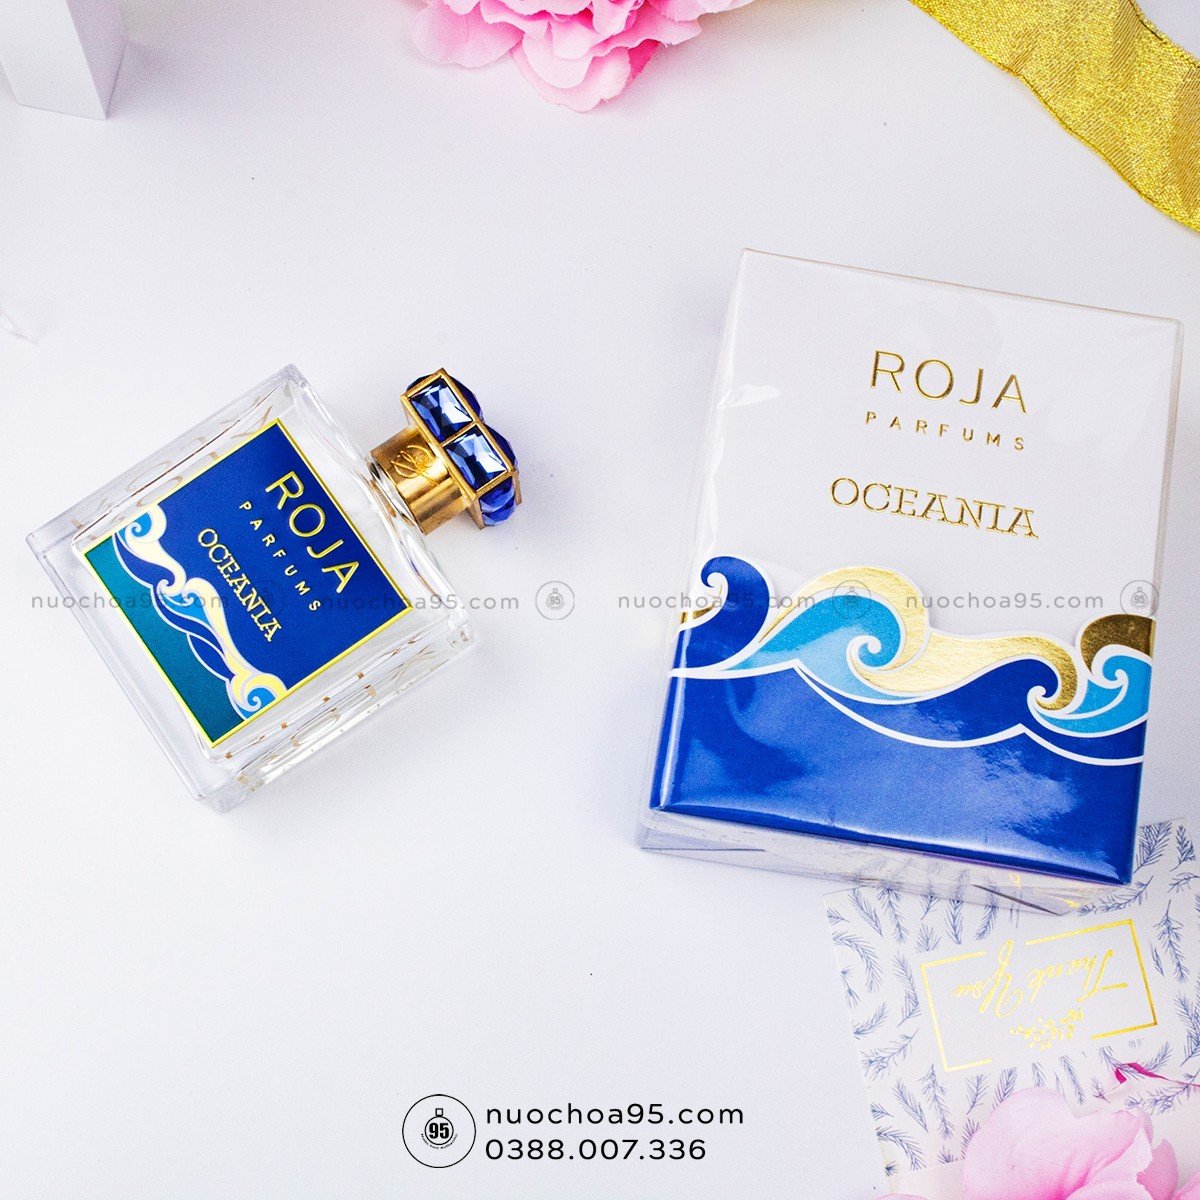 Nước hoa Roja Dove Oceania chính hãng tại Hà Nội